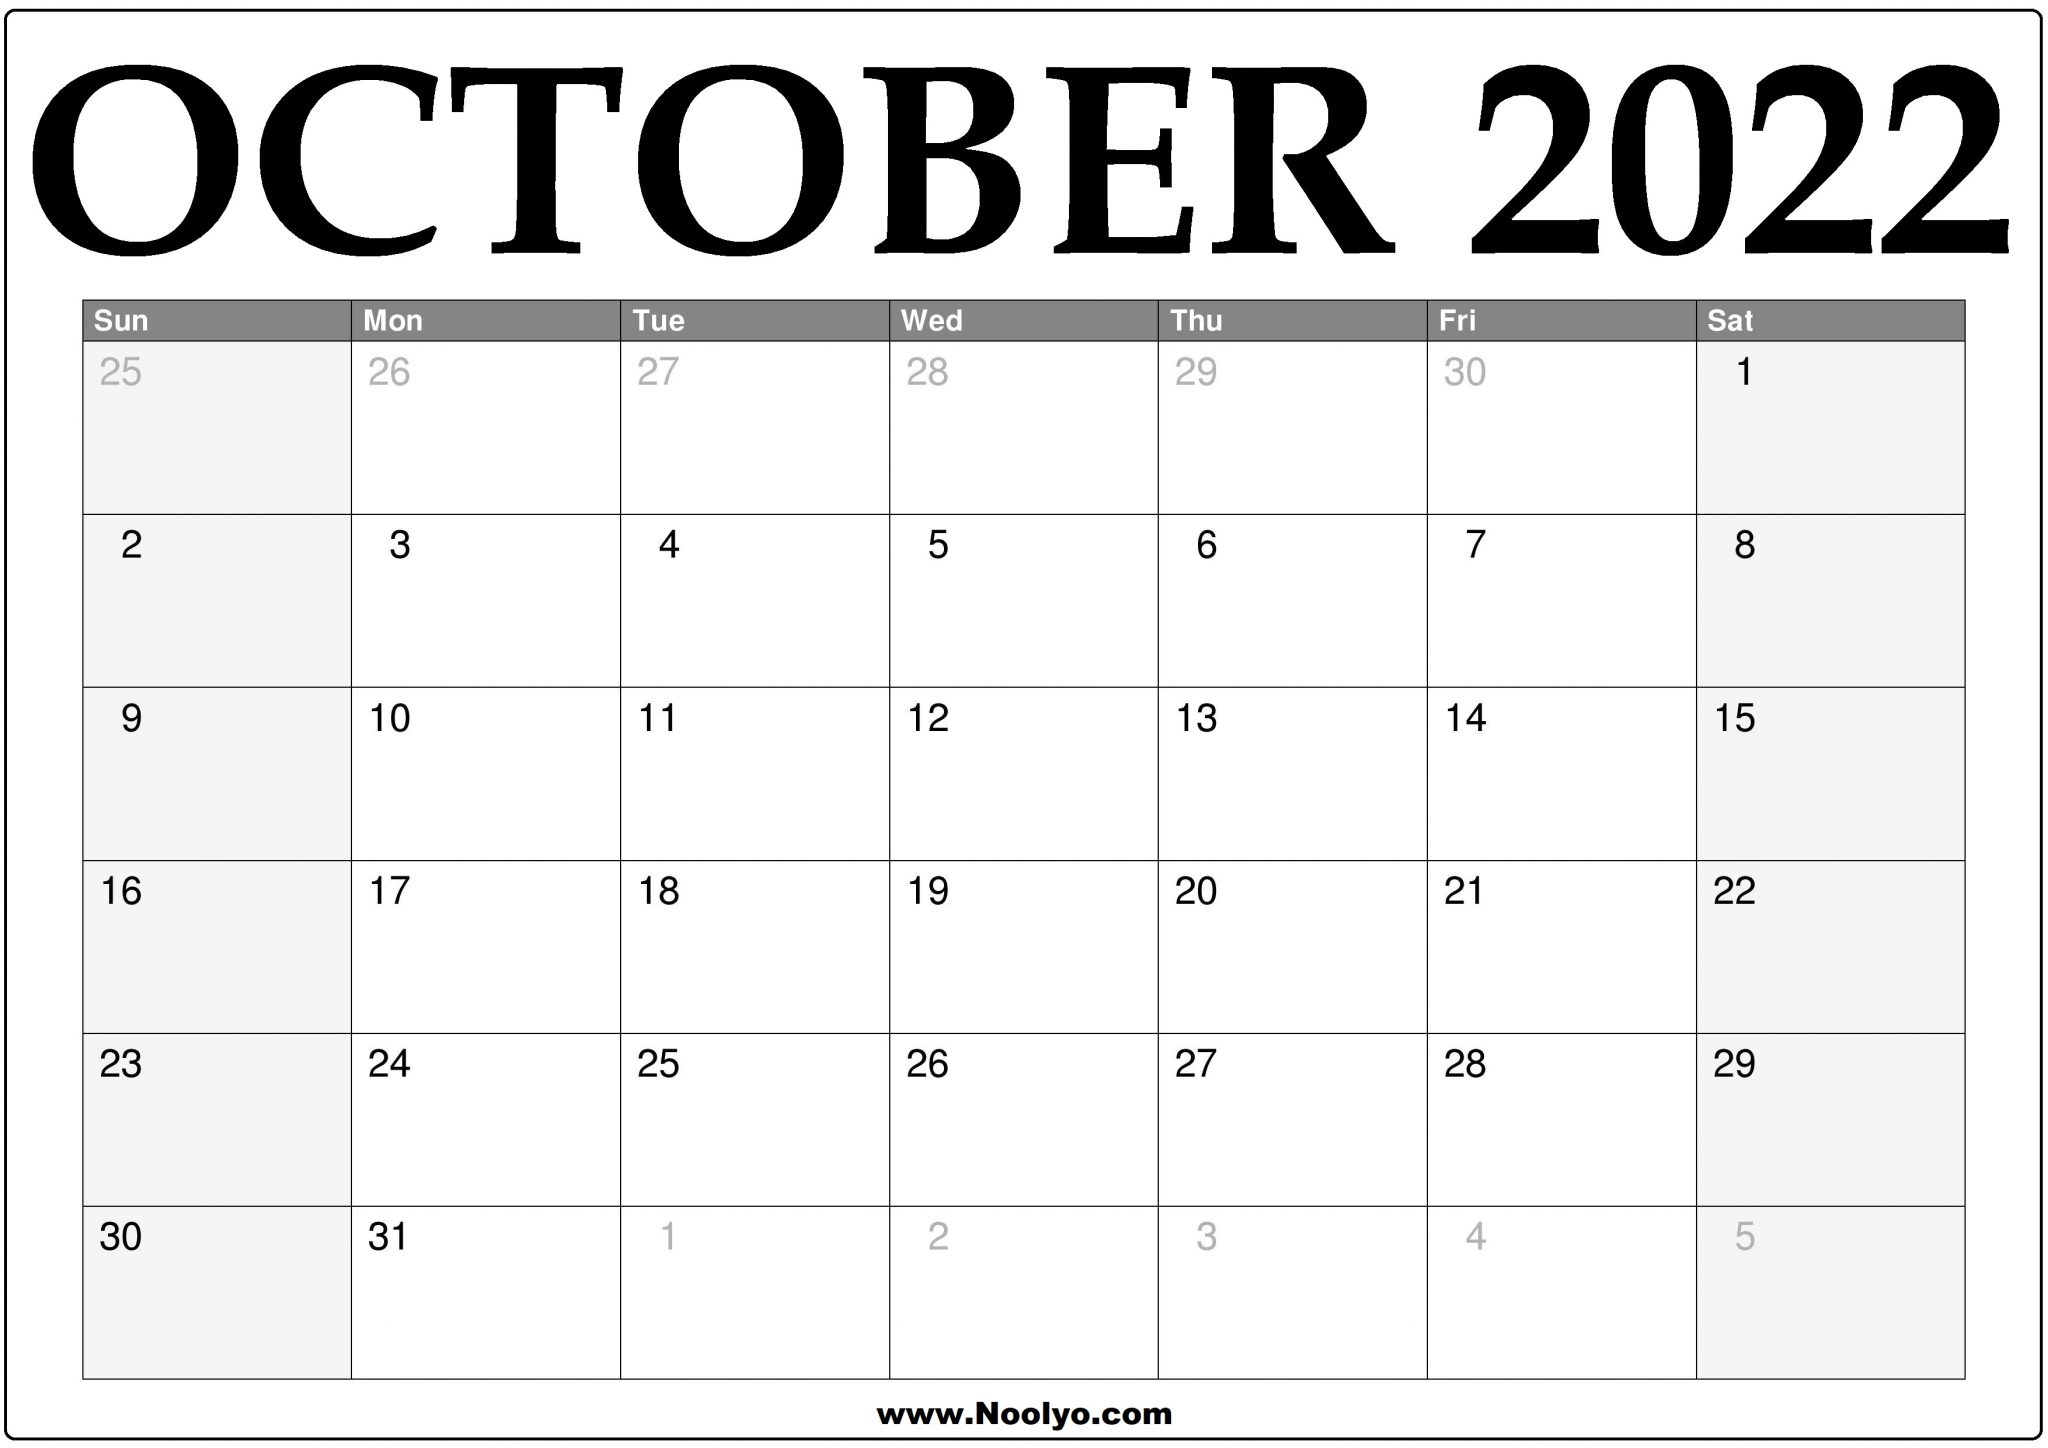 october-2022-calendars-50-free-printables-printabulls-in-2022